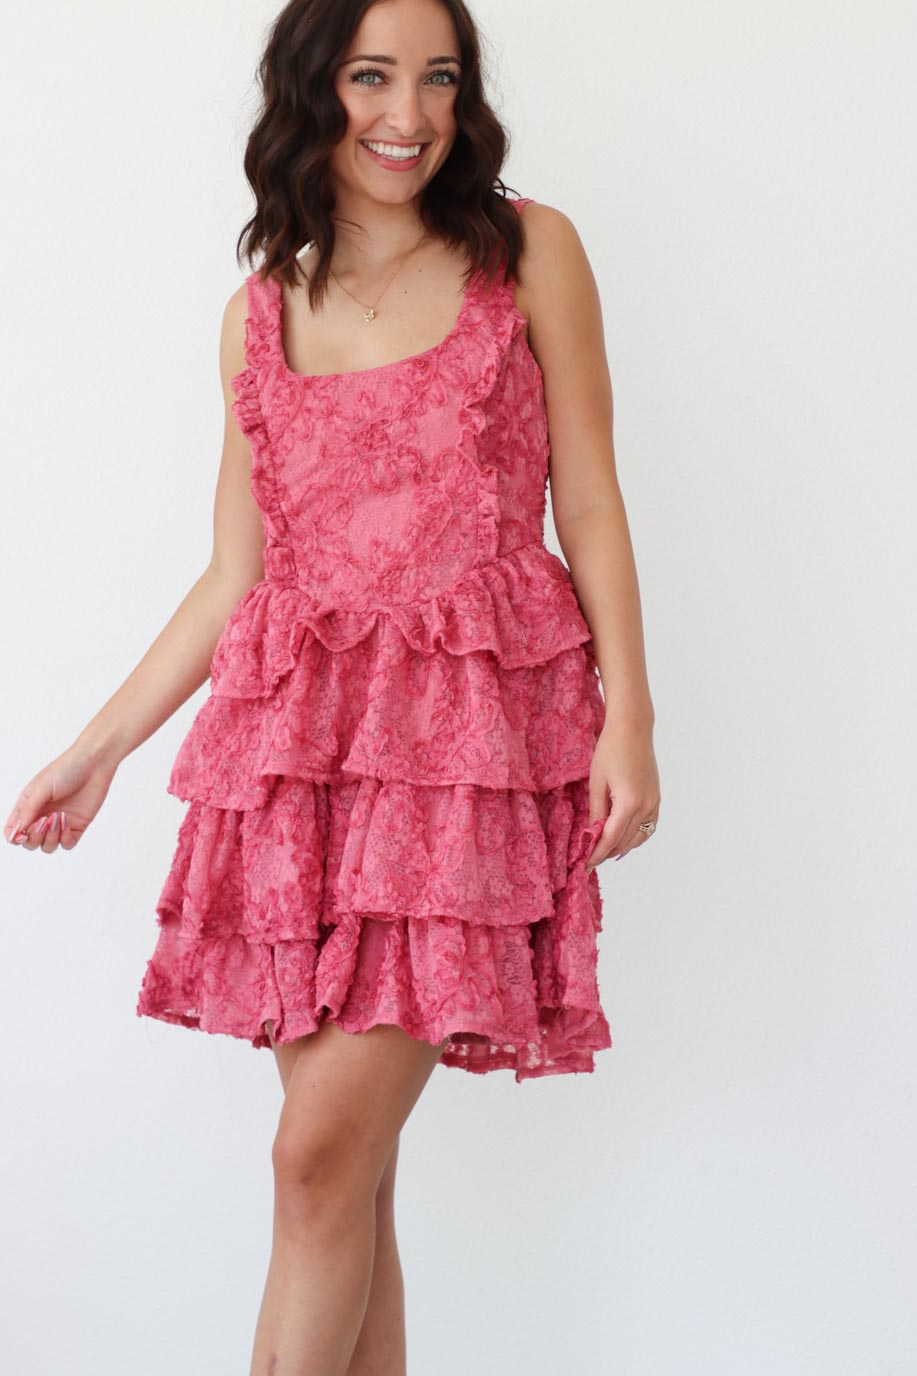 girl wearing short pink ruffle dress